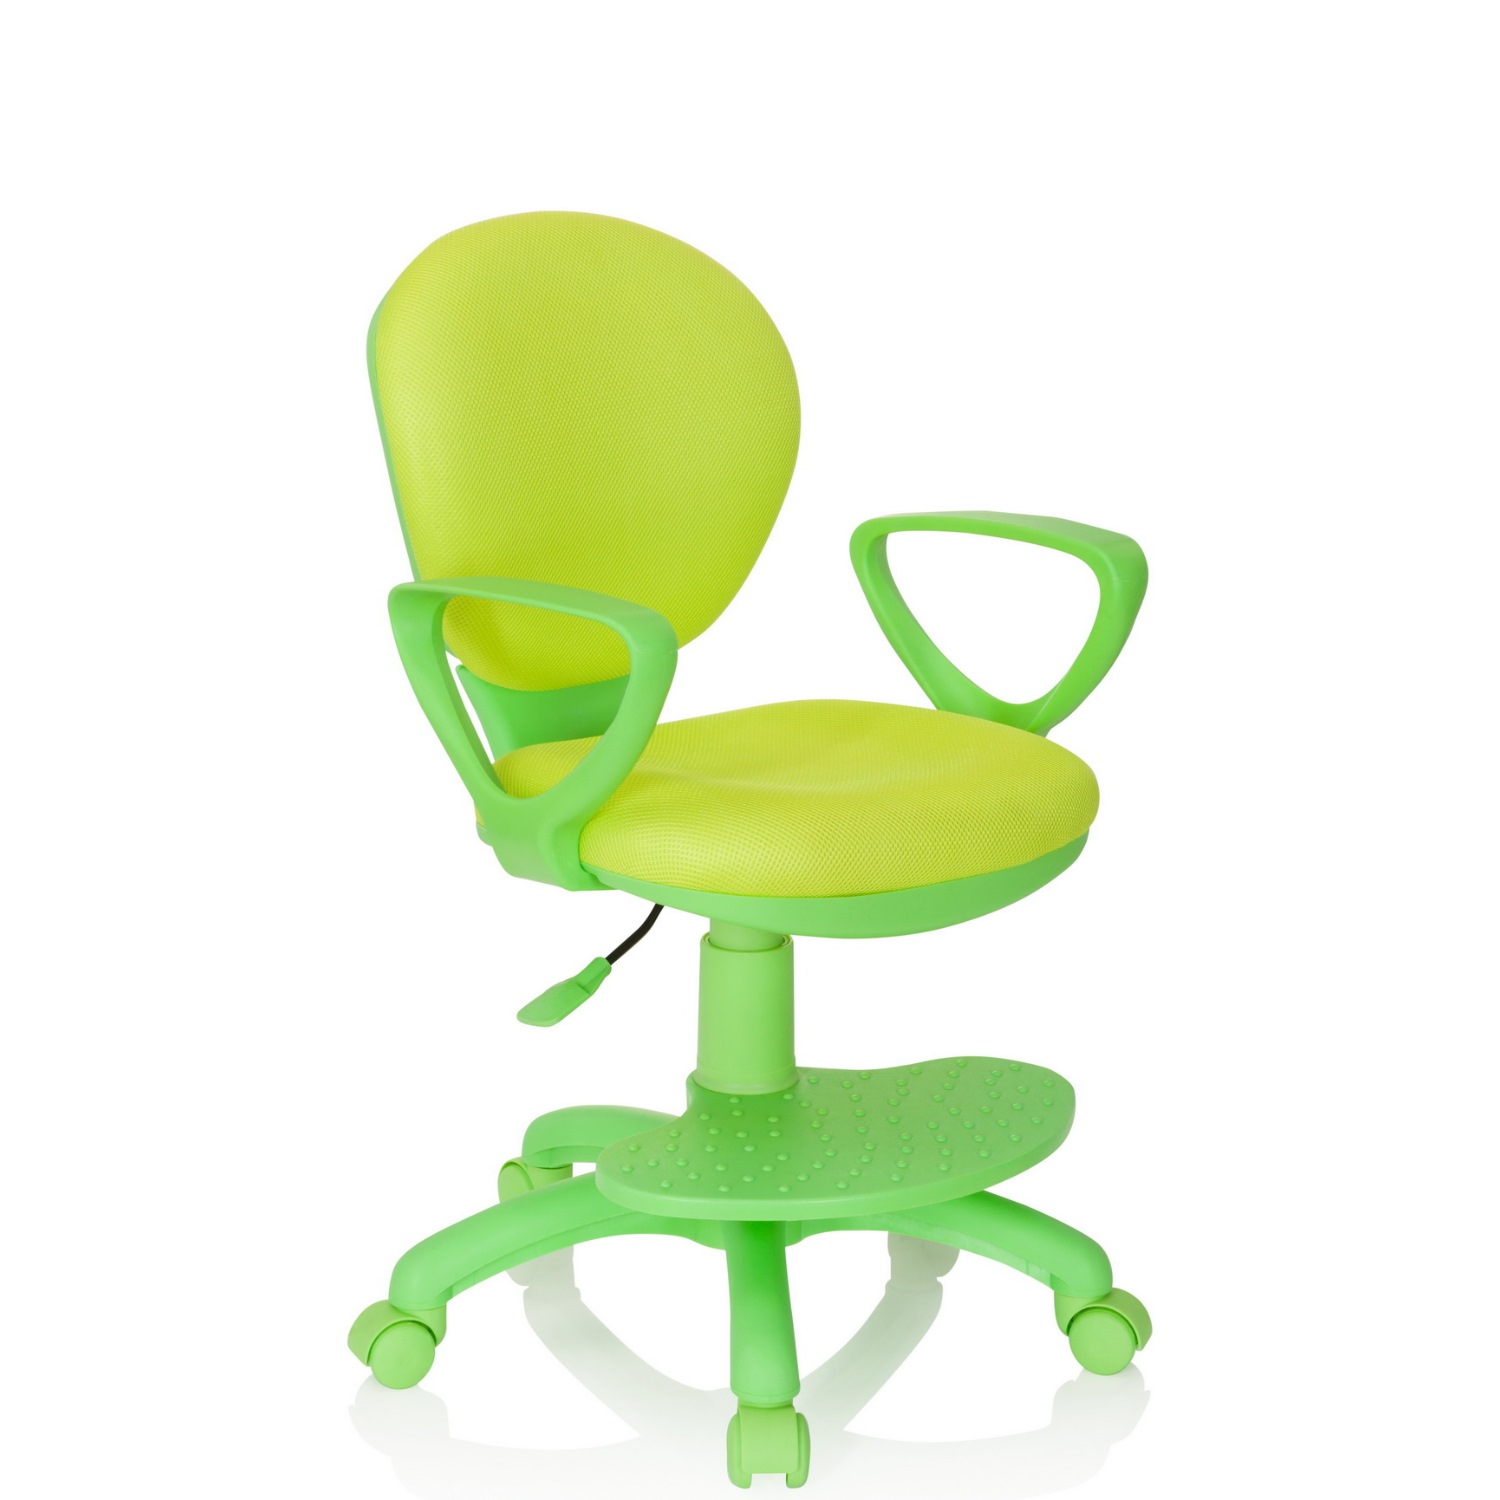 schnell Kinderstuhl - Büromöbel und preiswert Schreibtischstuhl grün Büroland Stoff / PARADIGM